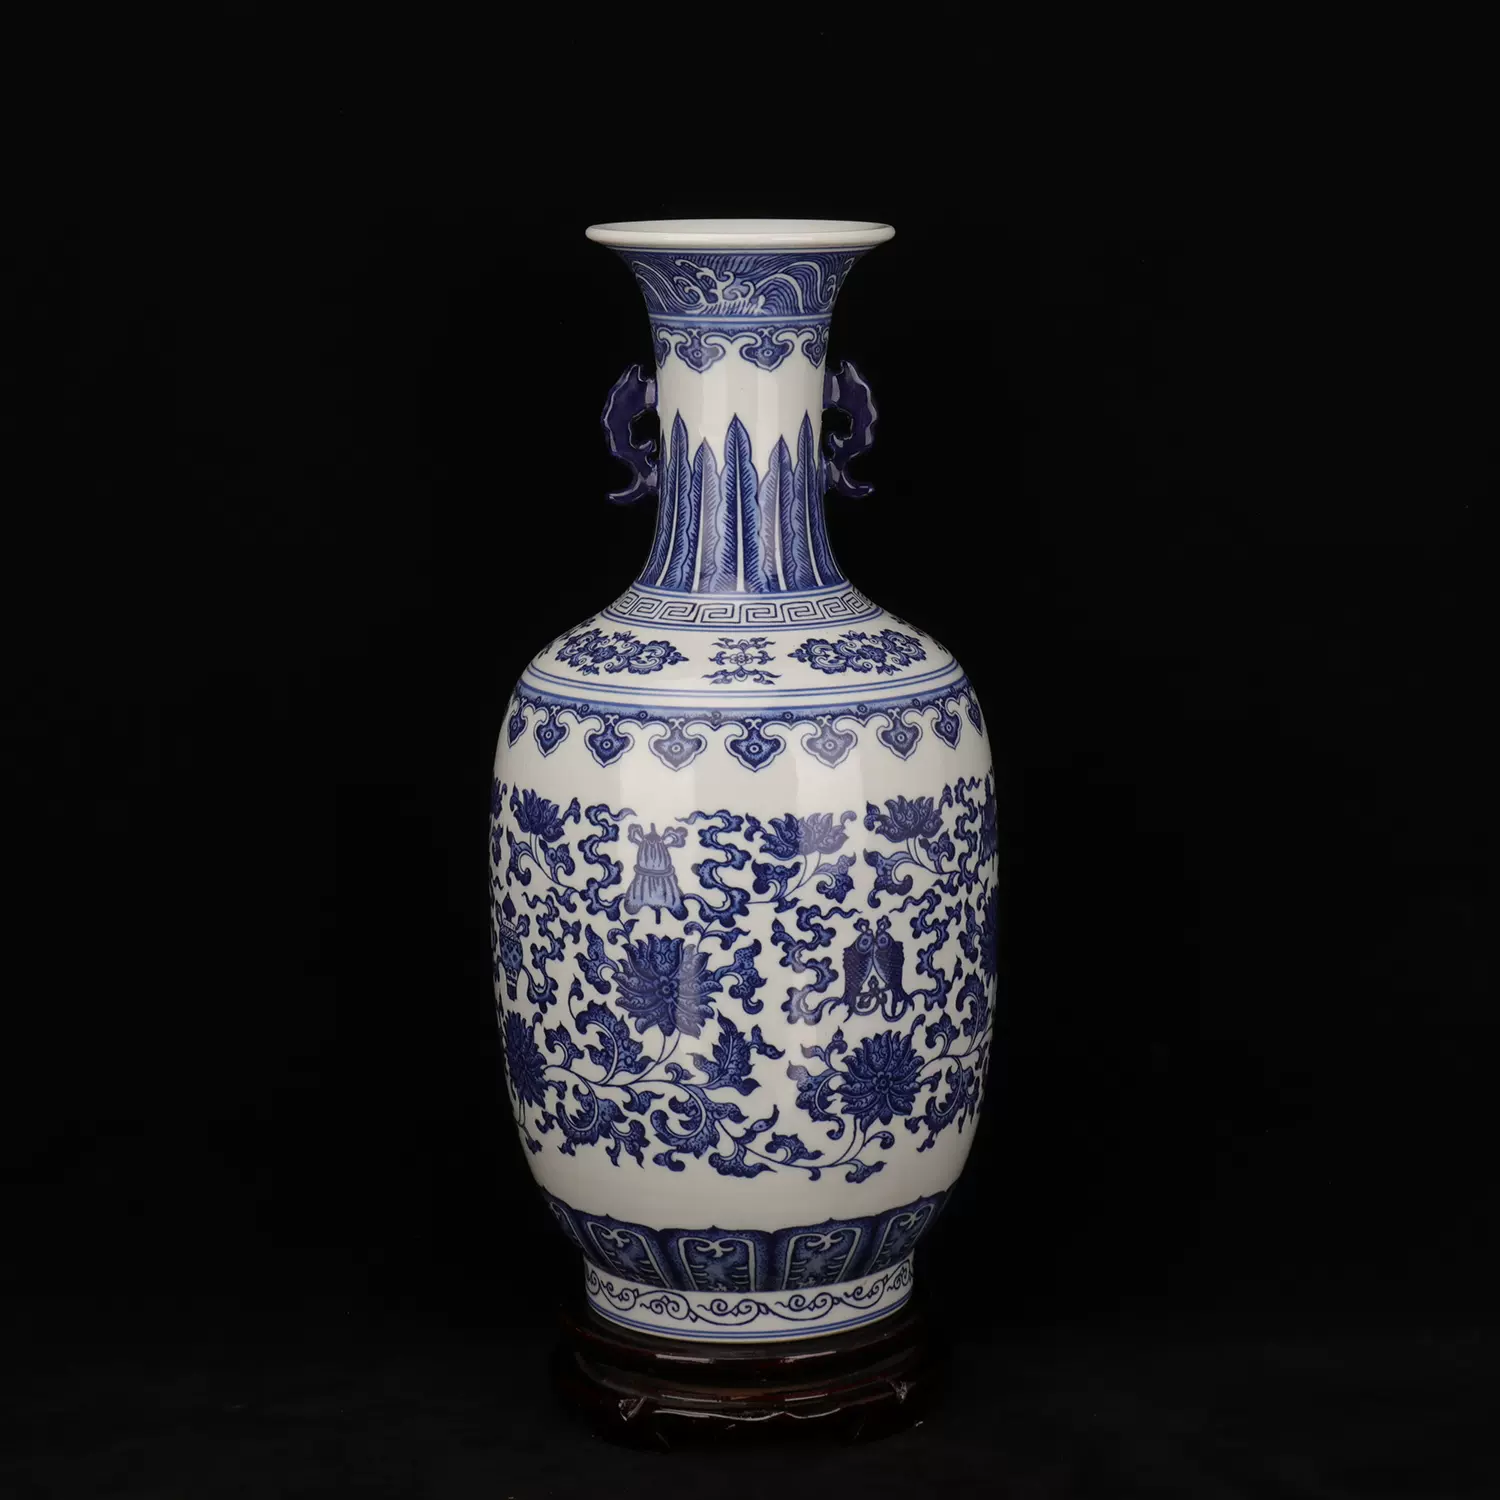 清乾隆年制款青花缠枝八宝纹双耳瓶老货旧货民间收藏古玩古董瓷器-Taobao